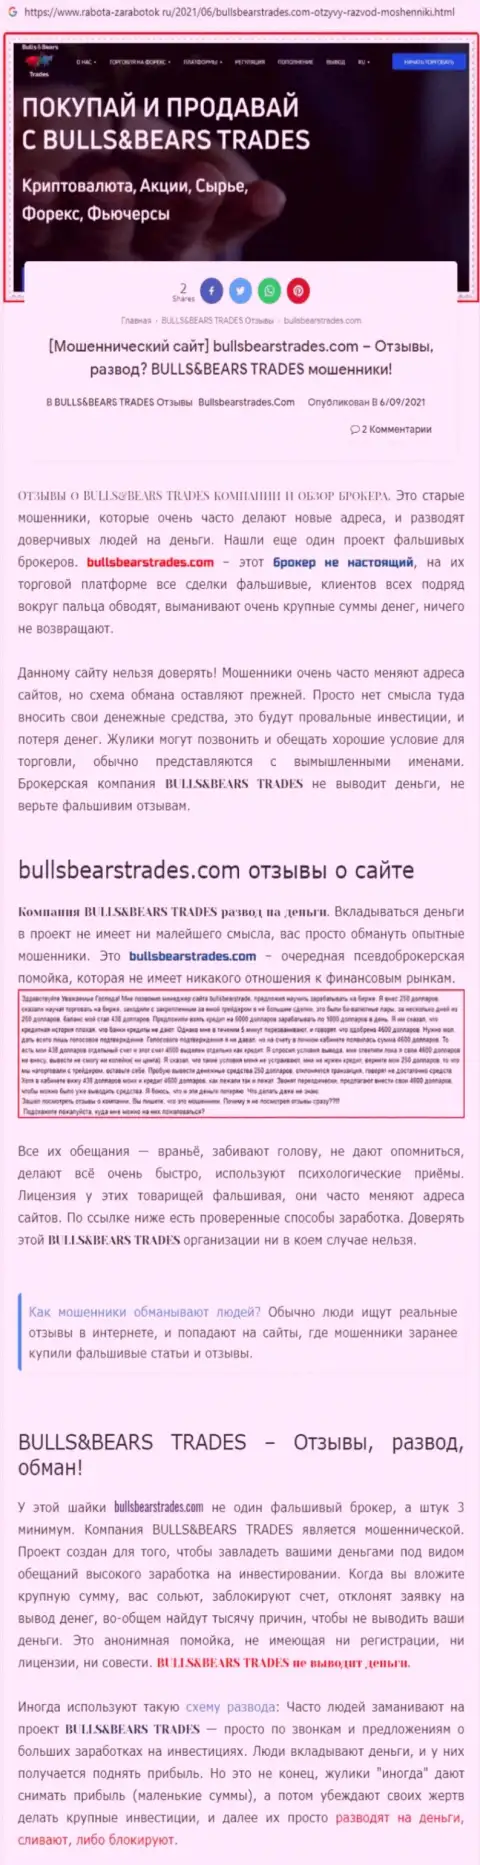 Обзор противоправно действующей компании Bulls Bears Trades о том, как ворует у доверчивых клиентов